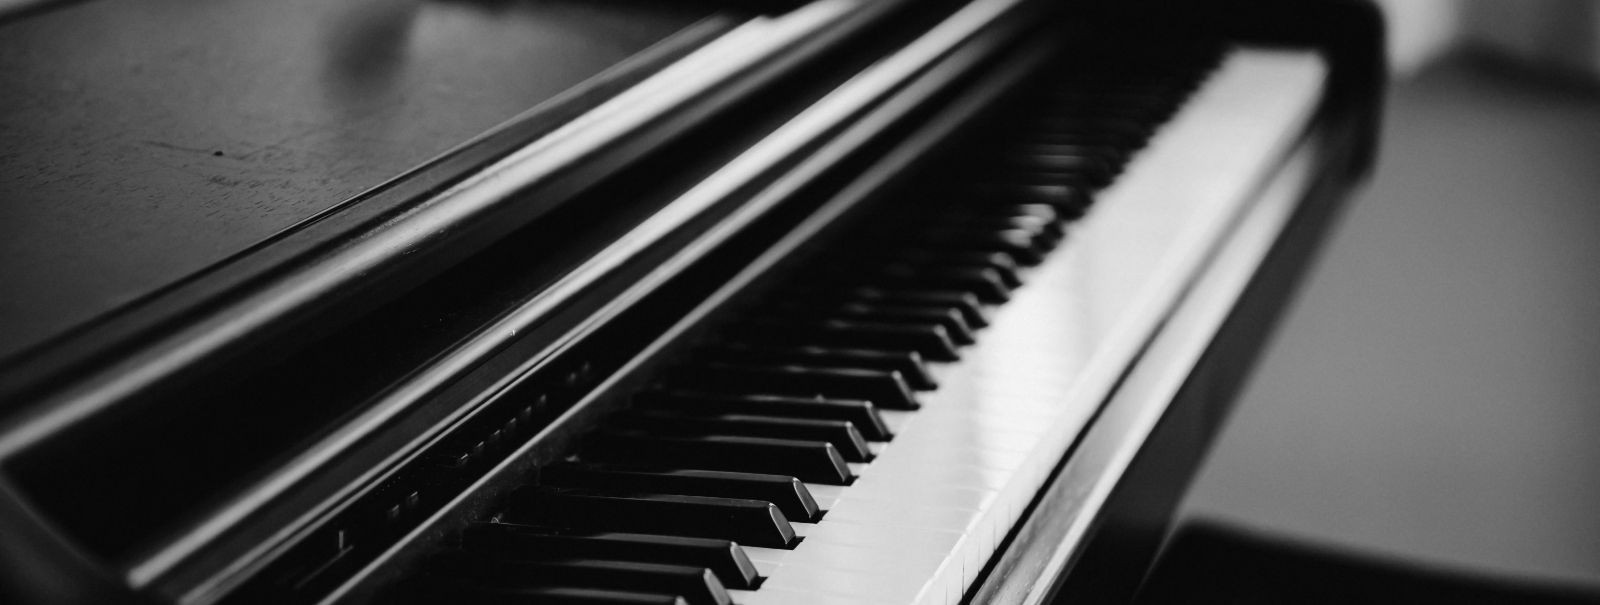 Paljude jaoks on klaver rohkem kui lihtsalt instrument – see on armastatud perekonna reliikvia, mis hoiab endas mineviku mälestusi ja meloodiaid. Sellise väärtu